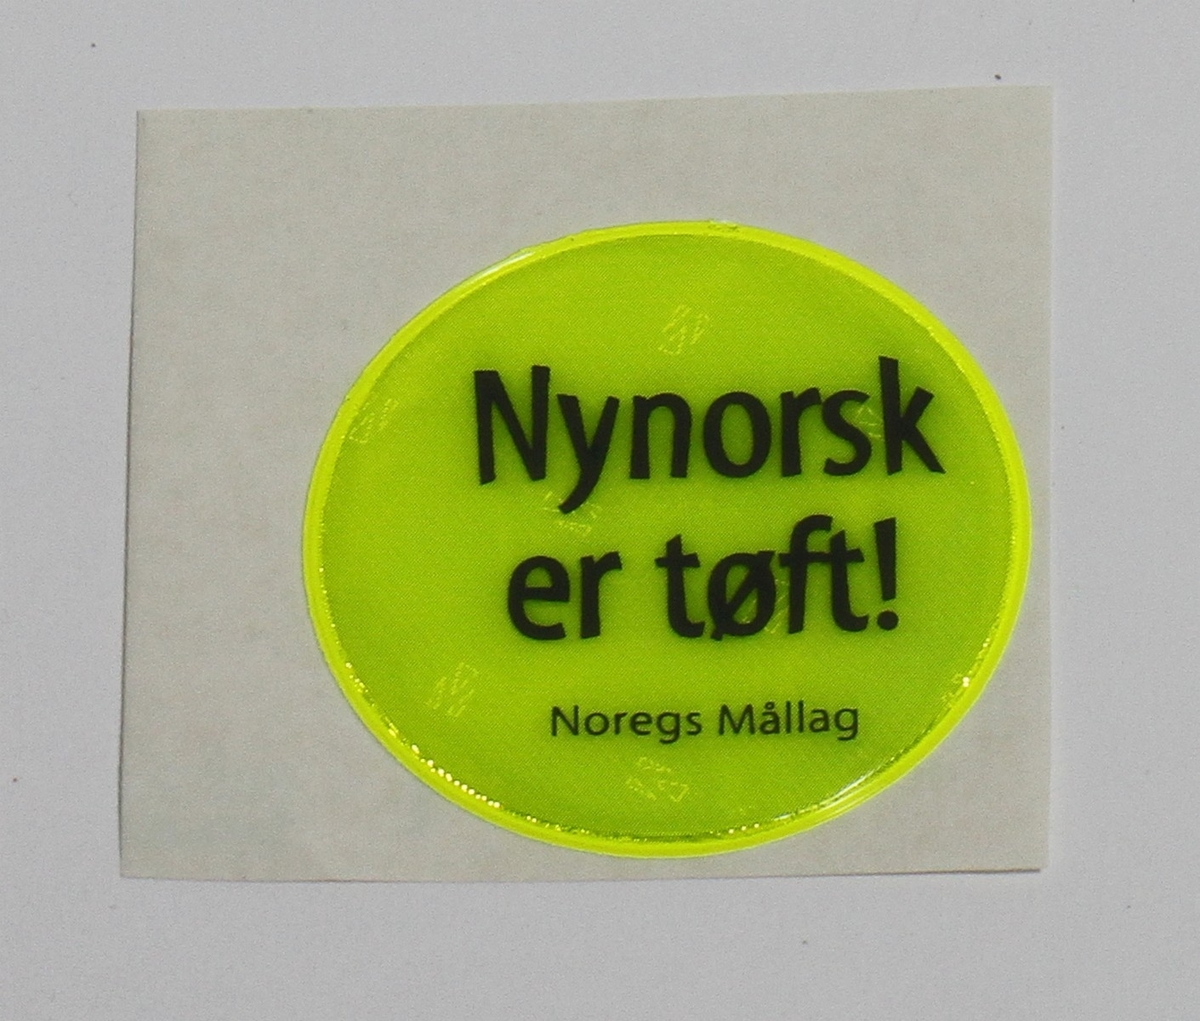 Gul klistrerefleks, som lyser i mørkret. Den sirkulære refleksen vart laga av Noregs Mållag, og bodskapen er at "Nynorsk er tøft!" Refleksen var truleg del av ein kampanje på 1990-talet.